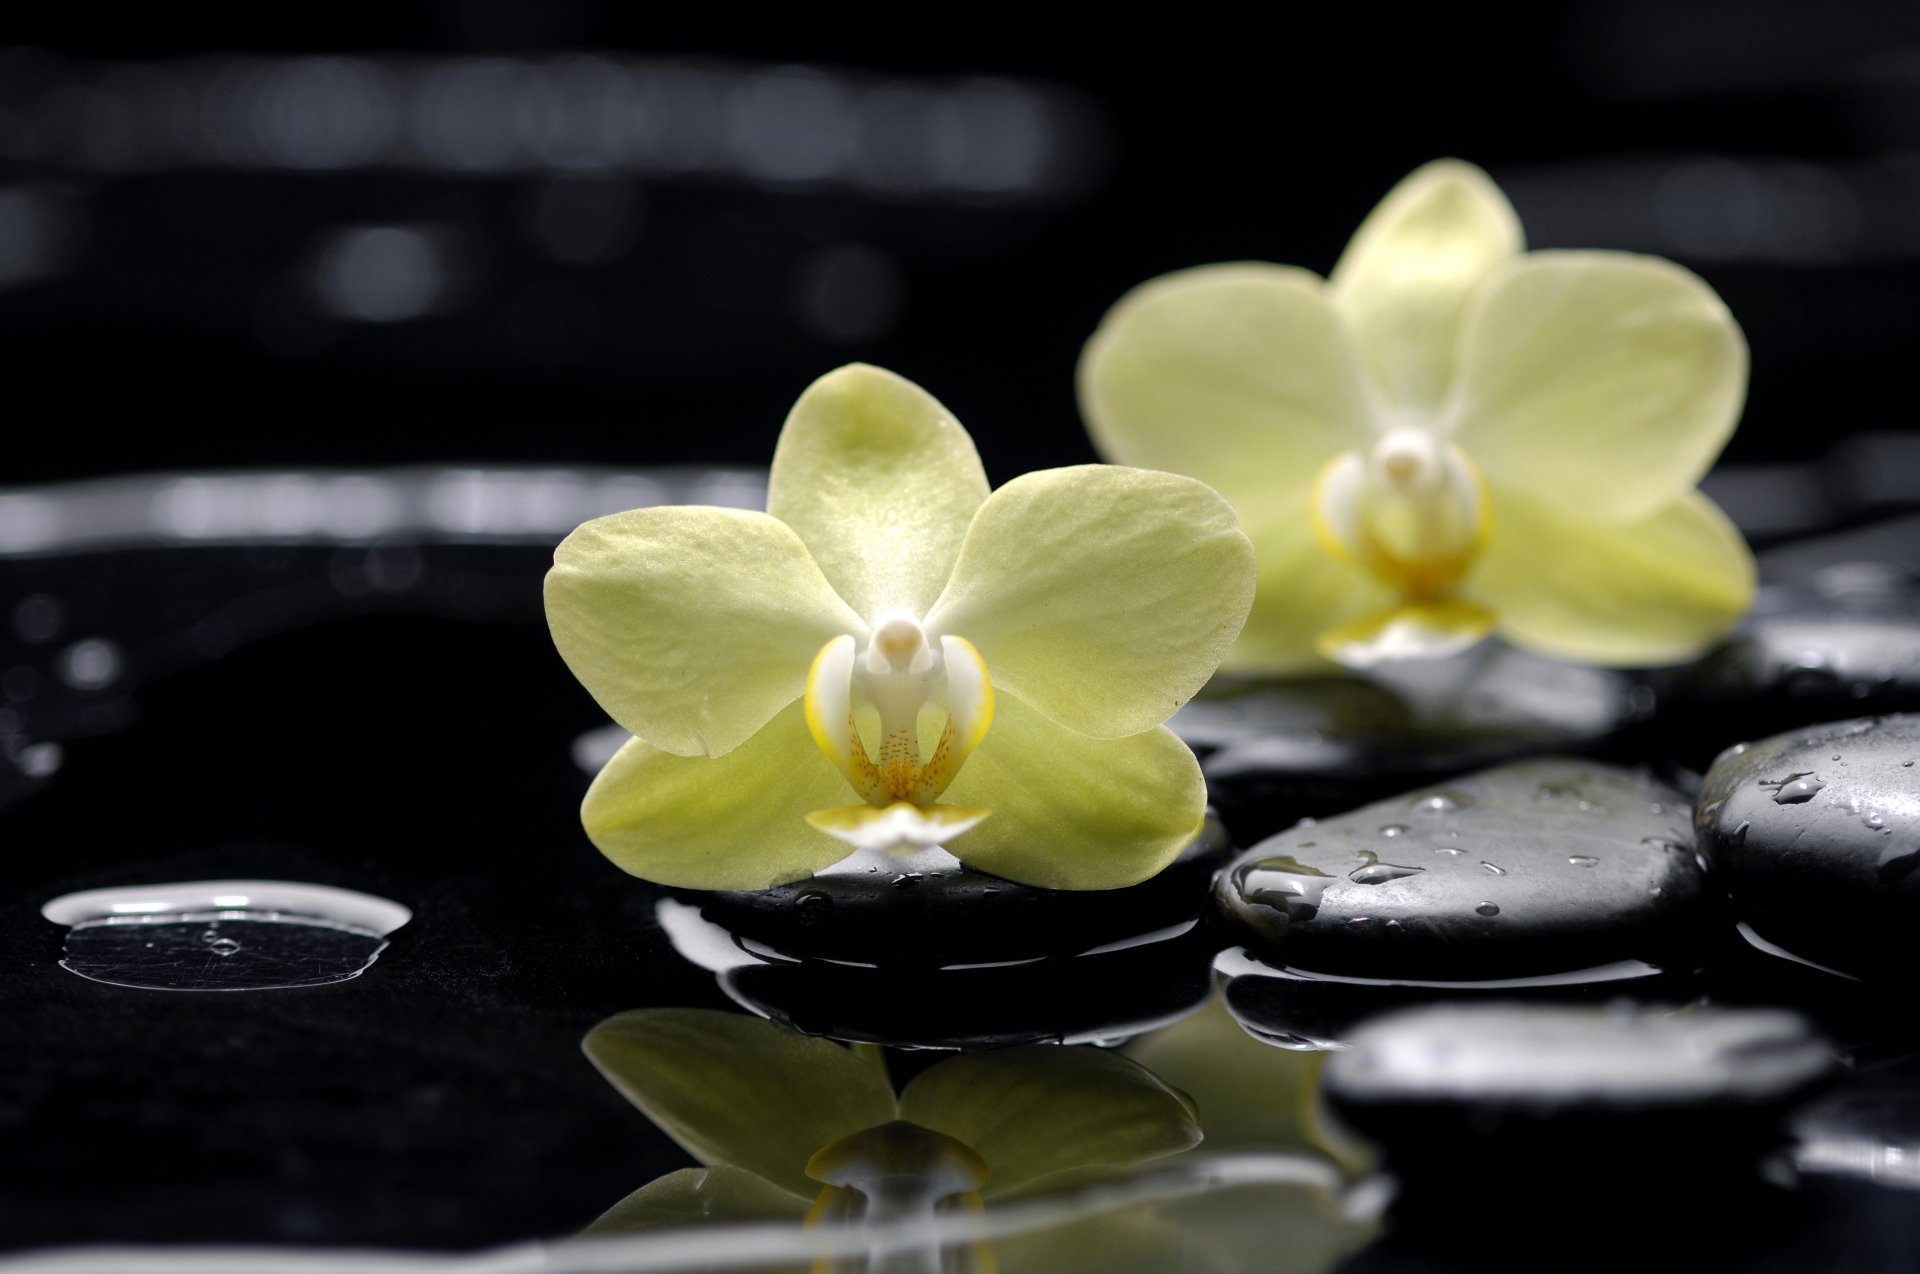 цветы орхидеи фаленопсис желтые камни плоские черные капли вода отражение